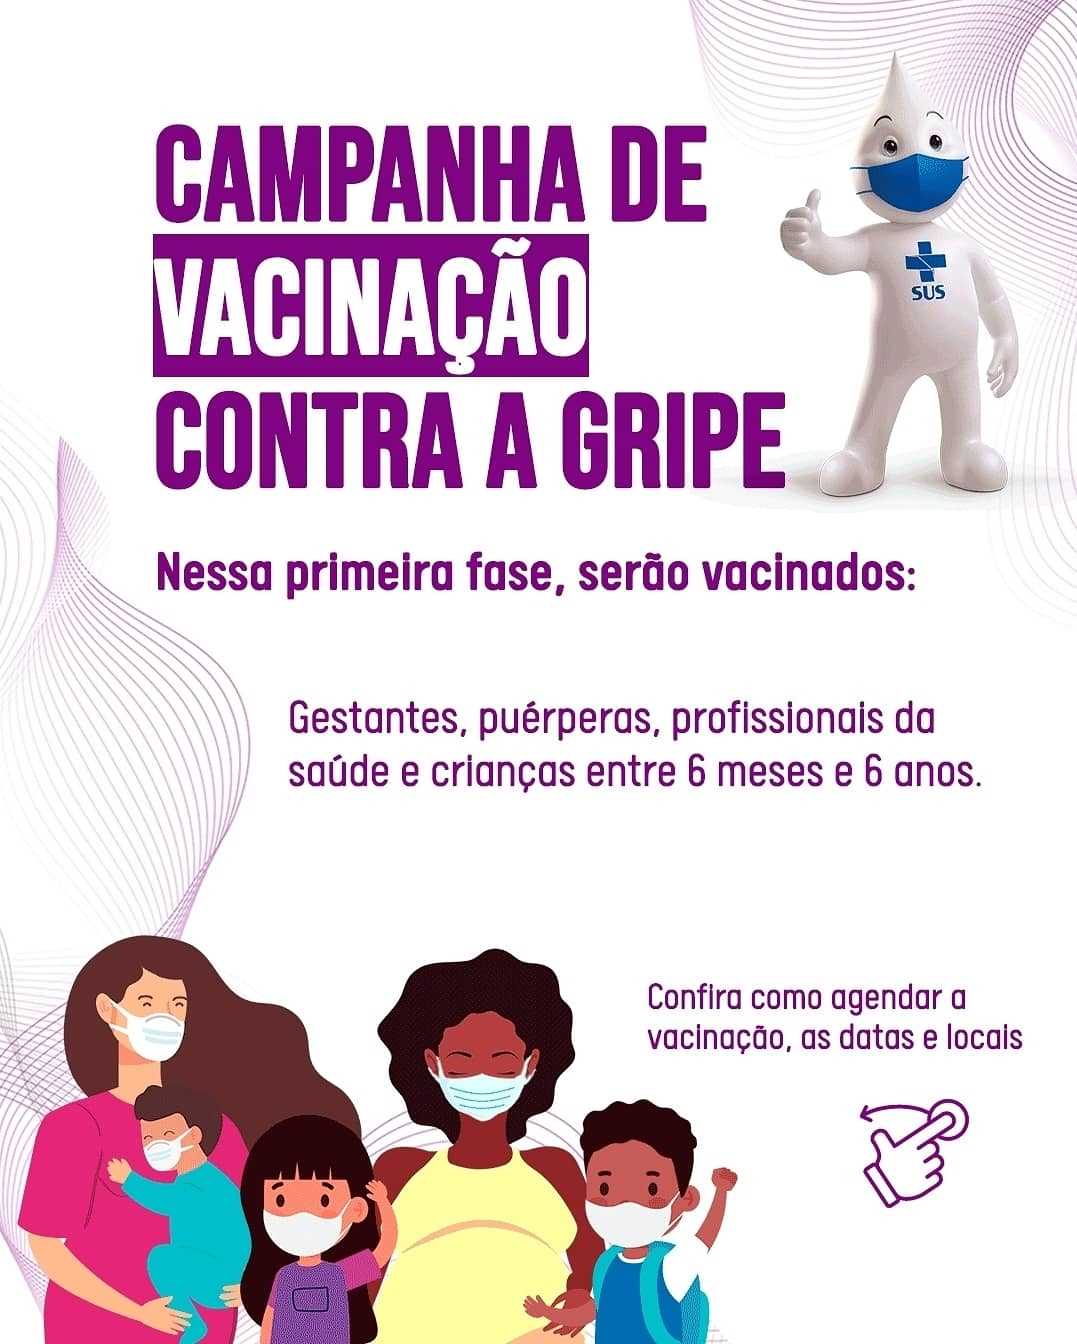 Campanha de vacinação contra a gripe já começou em Viçosa